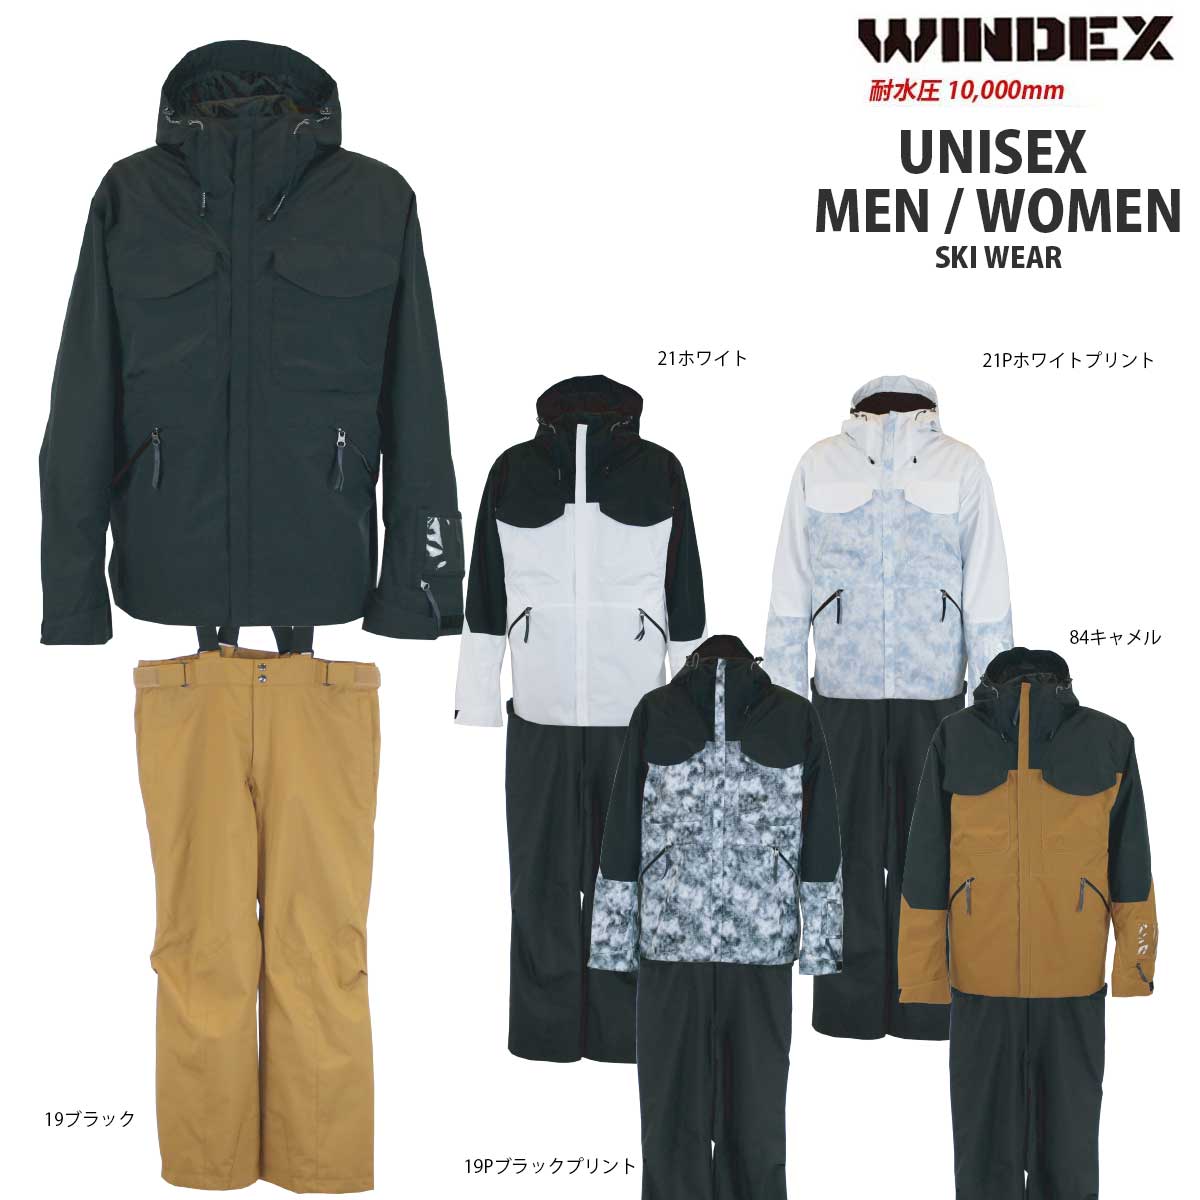 WINDEX(ウィンデックス) WS-5801 メンズ レディース ユニセックス スノーウェア スキーウェア 上下セット